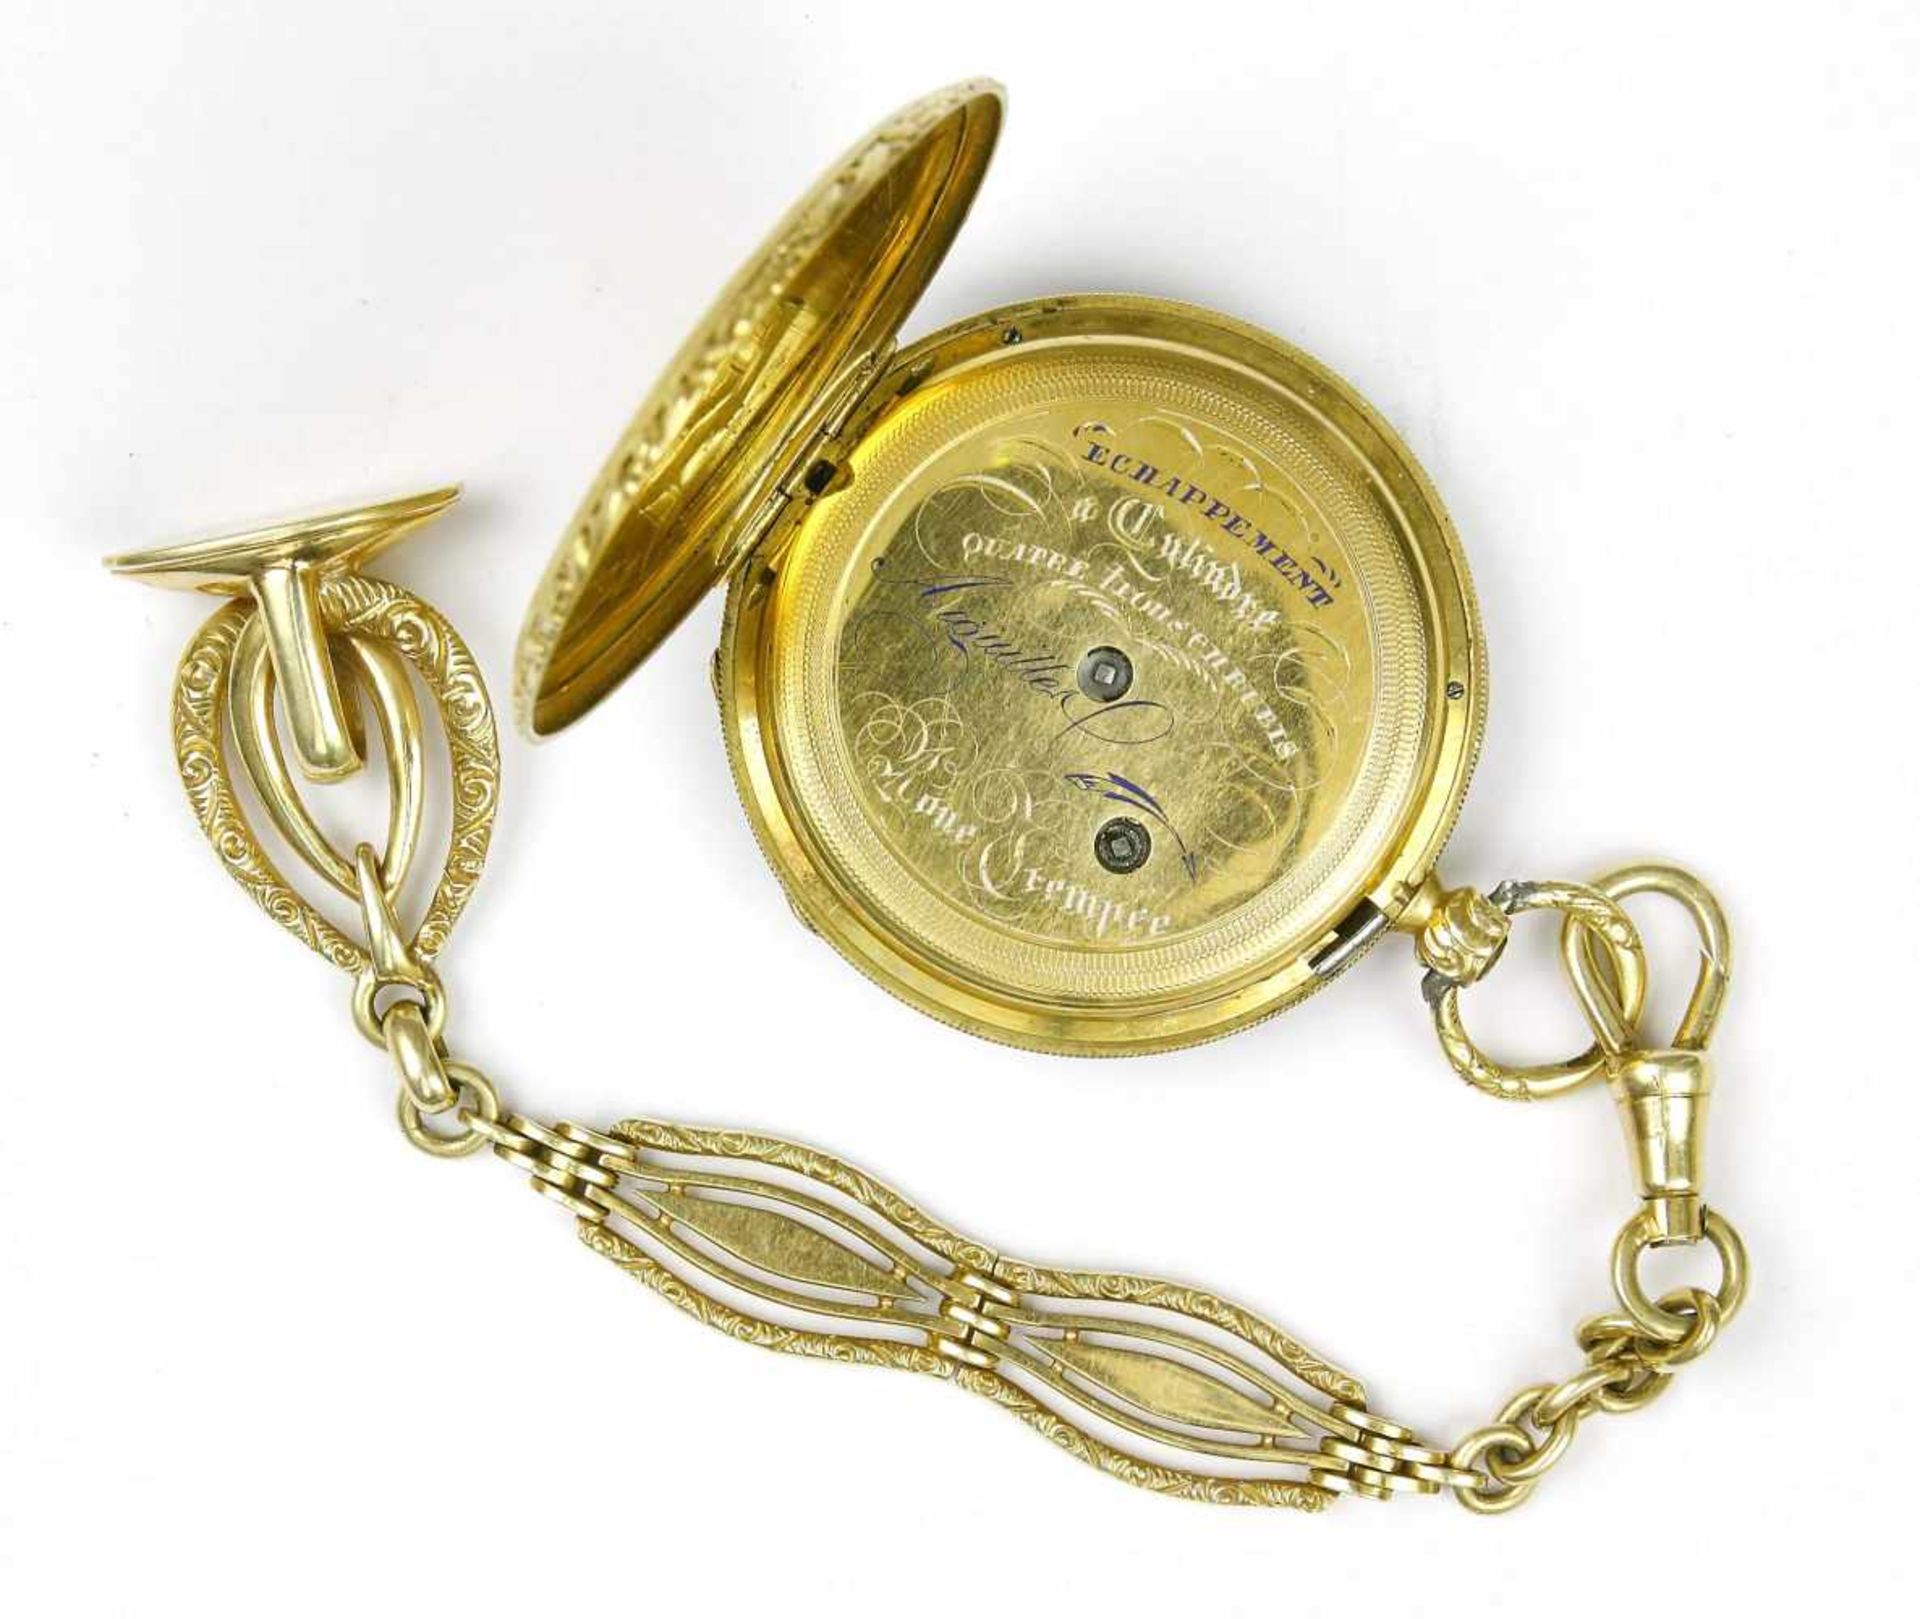 Uhr, Taschenuhr, 750er GG., Aiguilles, 19. Jh.Echappment a Cylindre. Schlüsselaufzug. D 3,8 cm. - Image 2 of 2